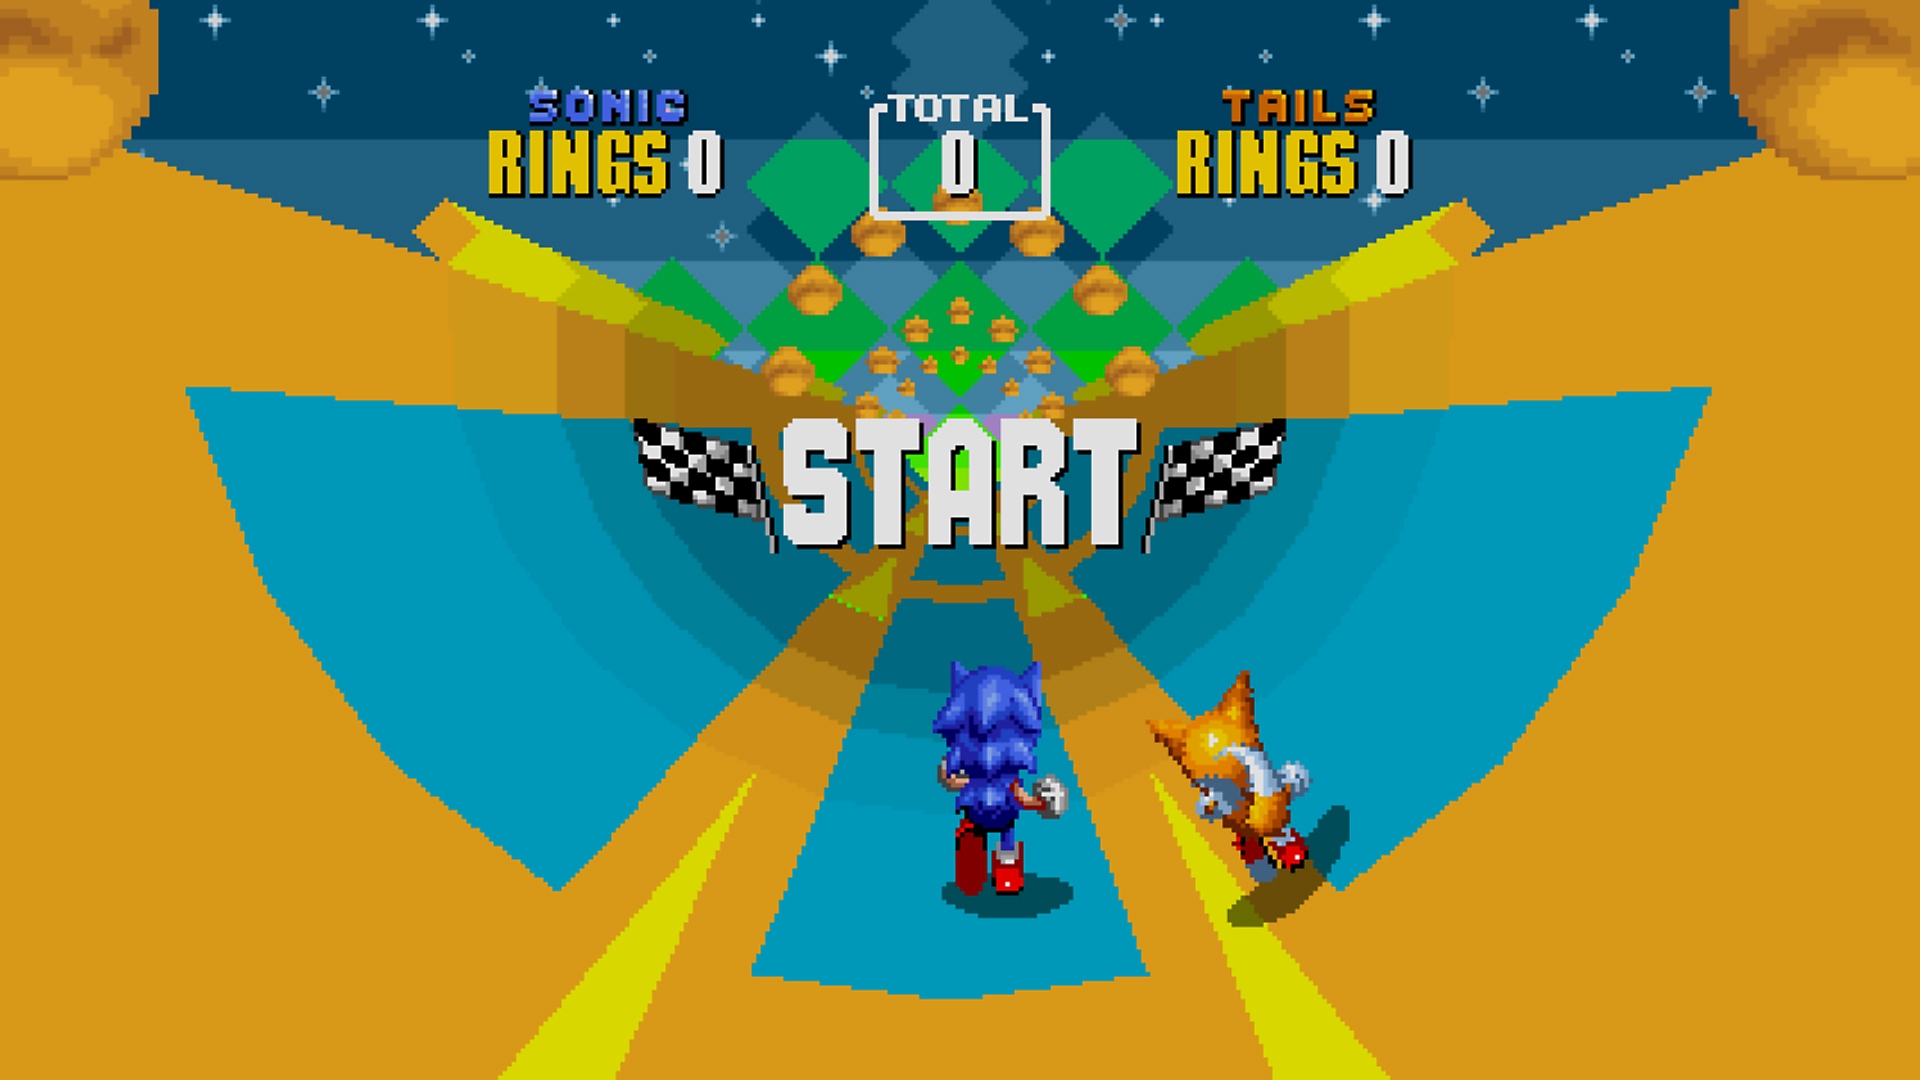 لقطة شاشة من Sonic Origins تعرض Sonic و Tails يركضان في أحد المستويات